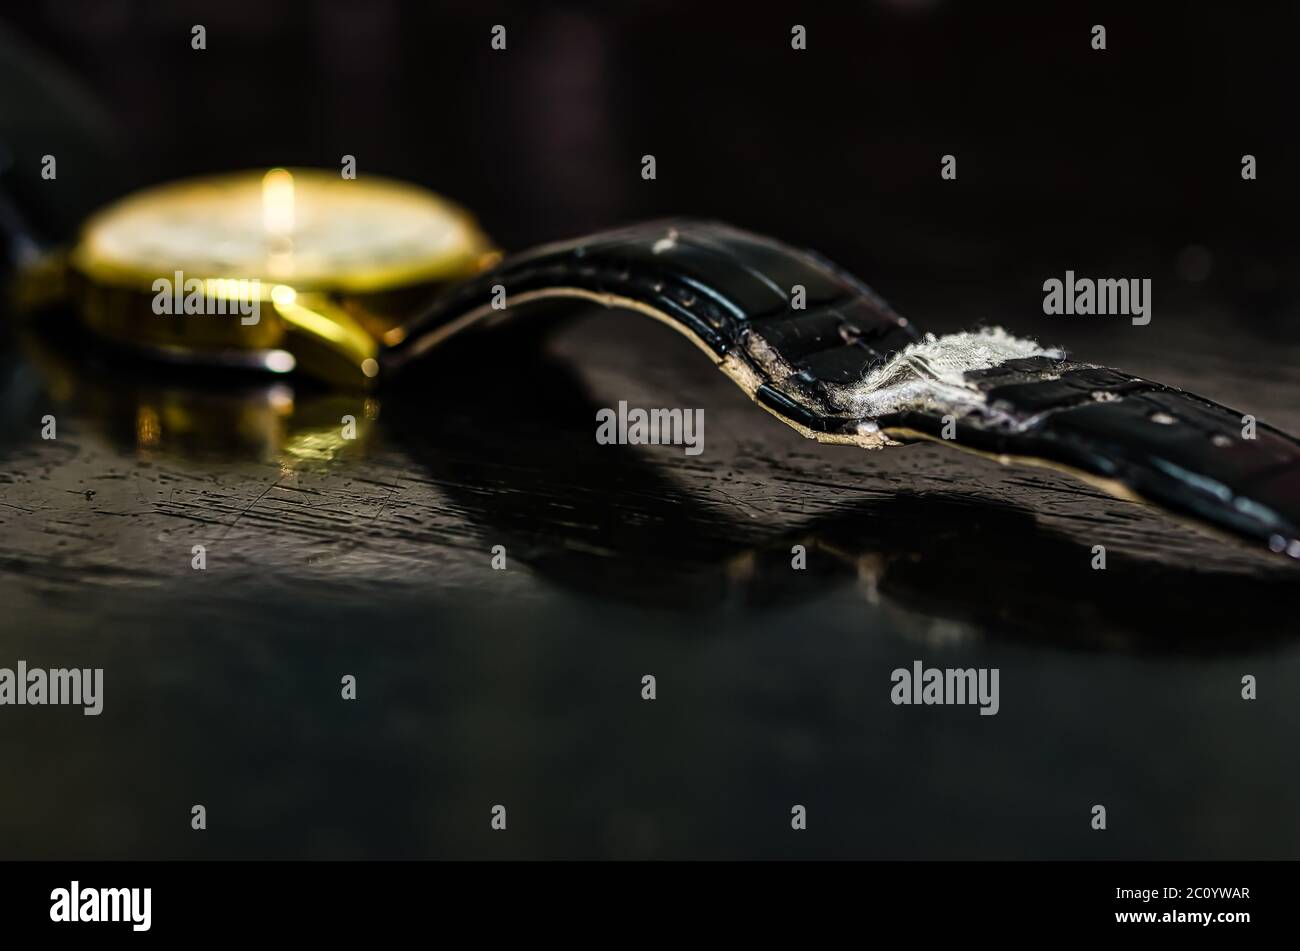 Gebrauchter und abgenutzter schwarzer Gürtel einer goldenen Uhr auf einem abgenutzten schwarzen Tisch. Stockfoto